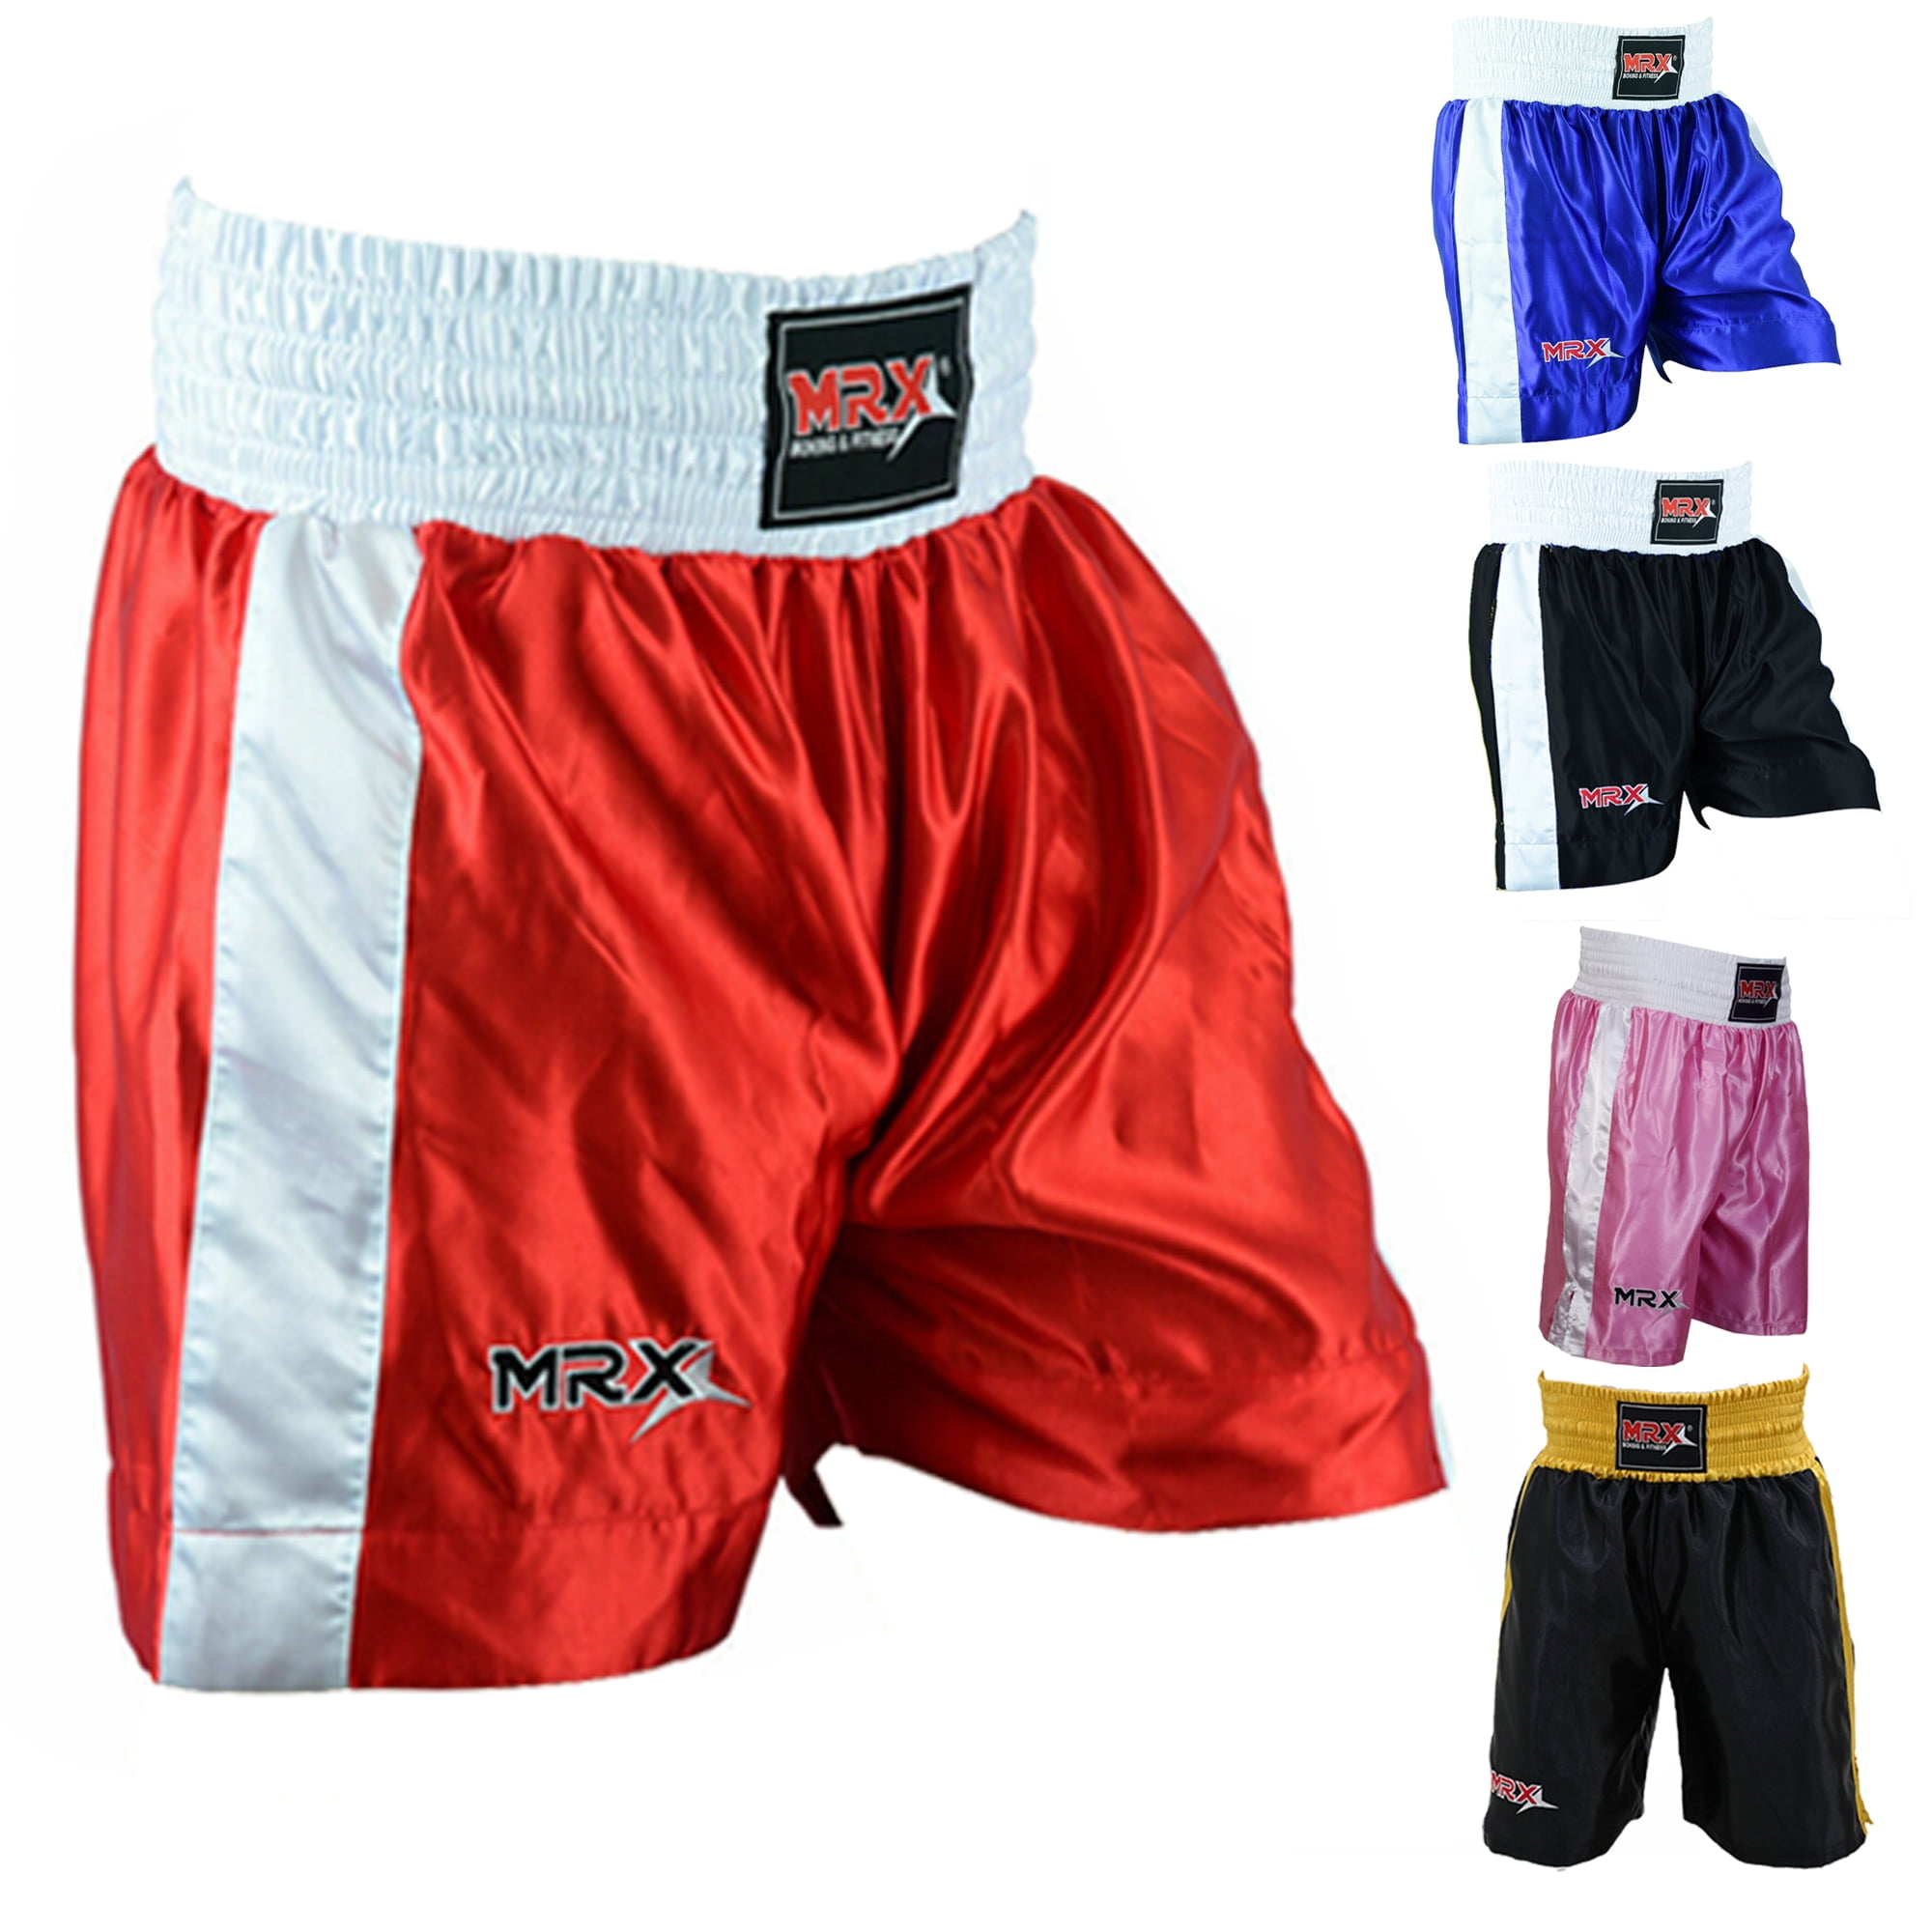  MRX - Camiseta y baúl para entrenamiento de MMA Muay Thai Cage  Fight, Kickboxing : Ropa, Zapatos y Joyería